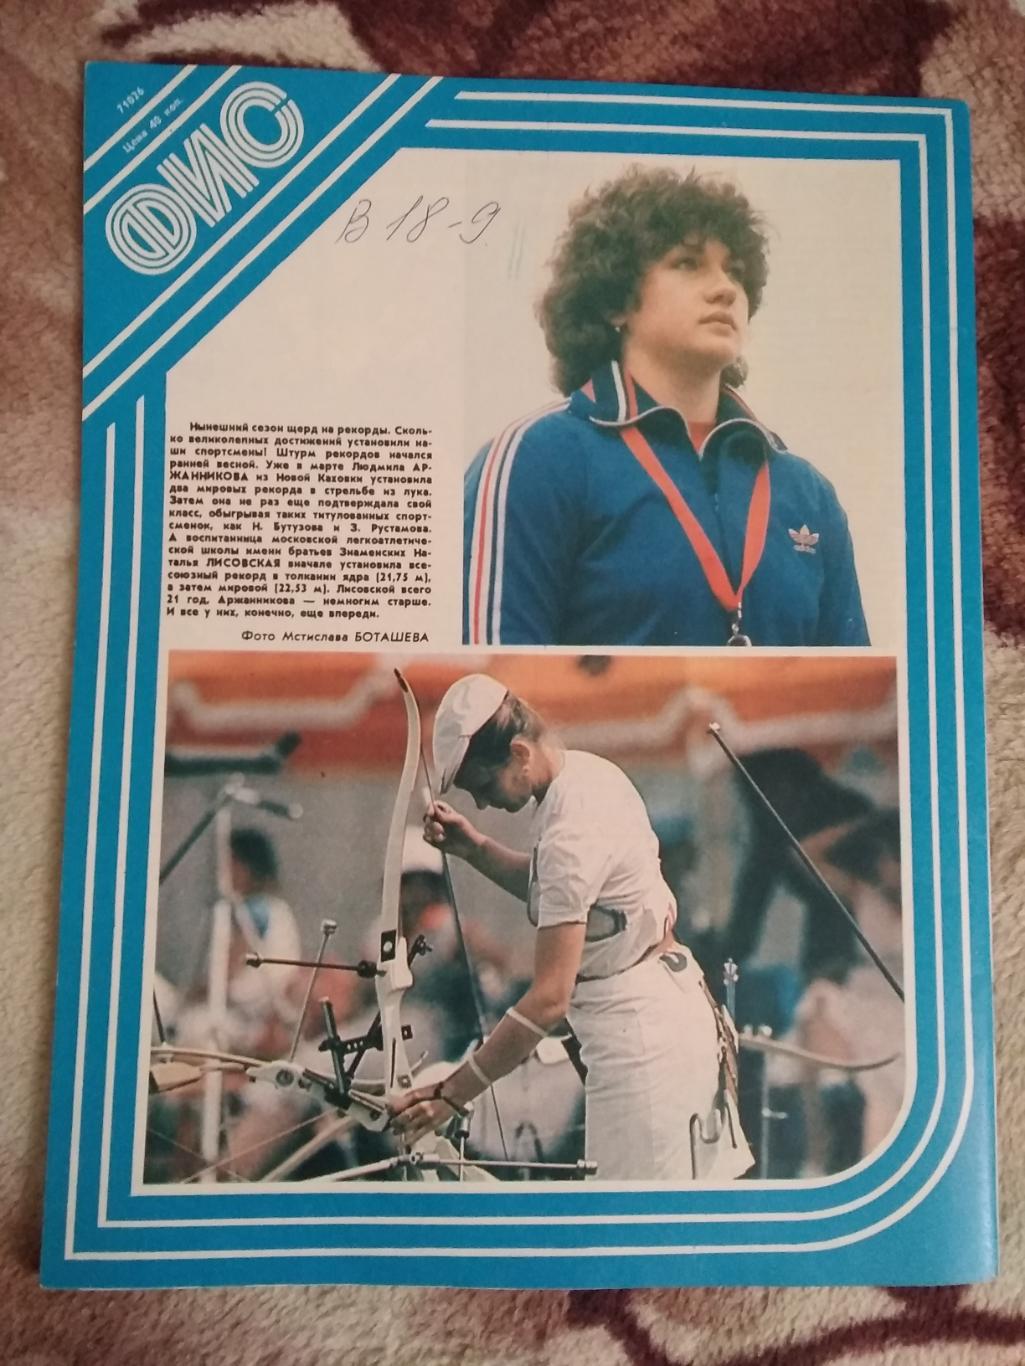 Журнал.Физкультура и спорт № 8 1984 г. (ФиС). 2